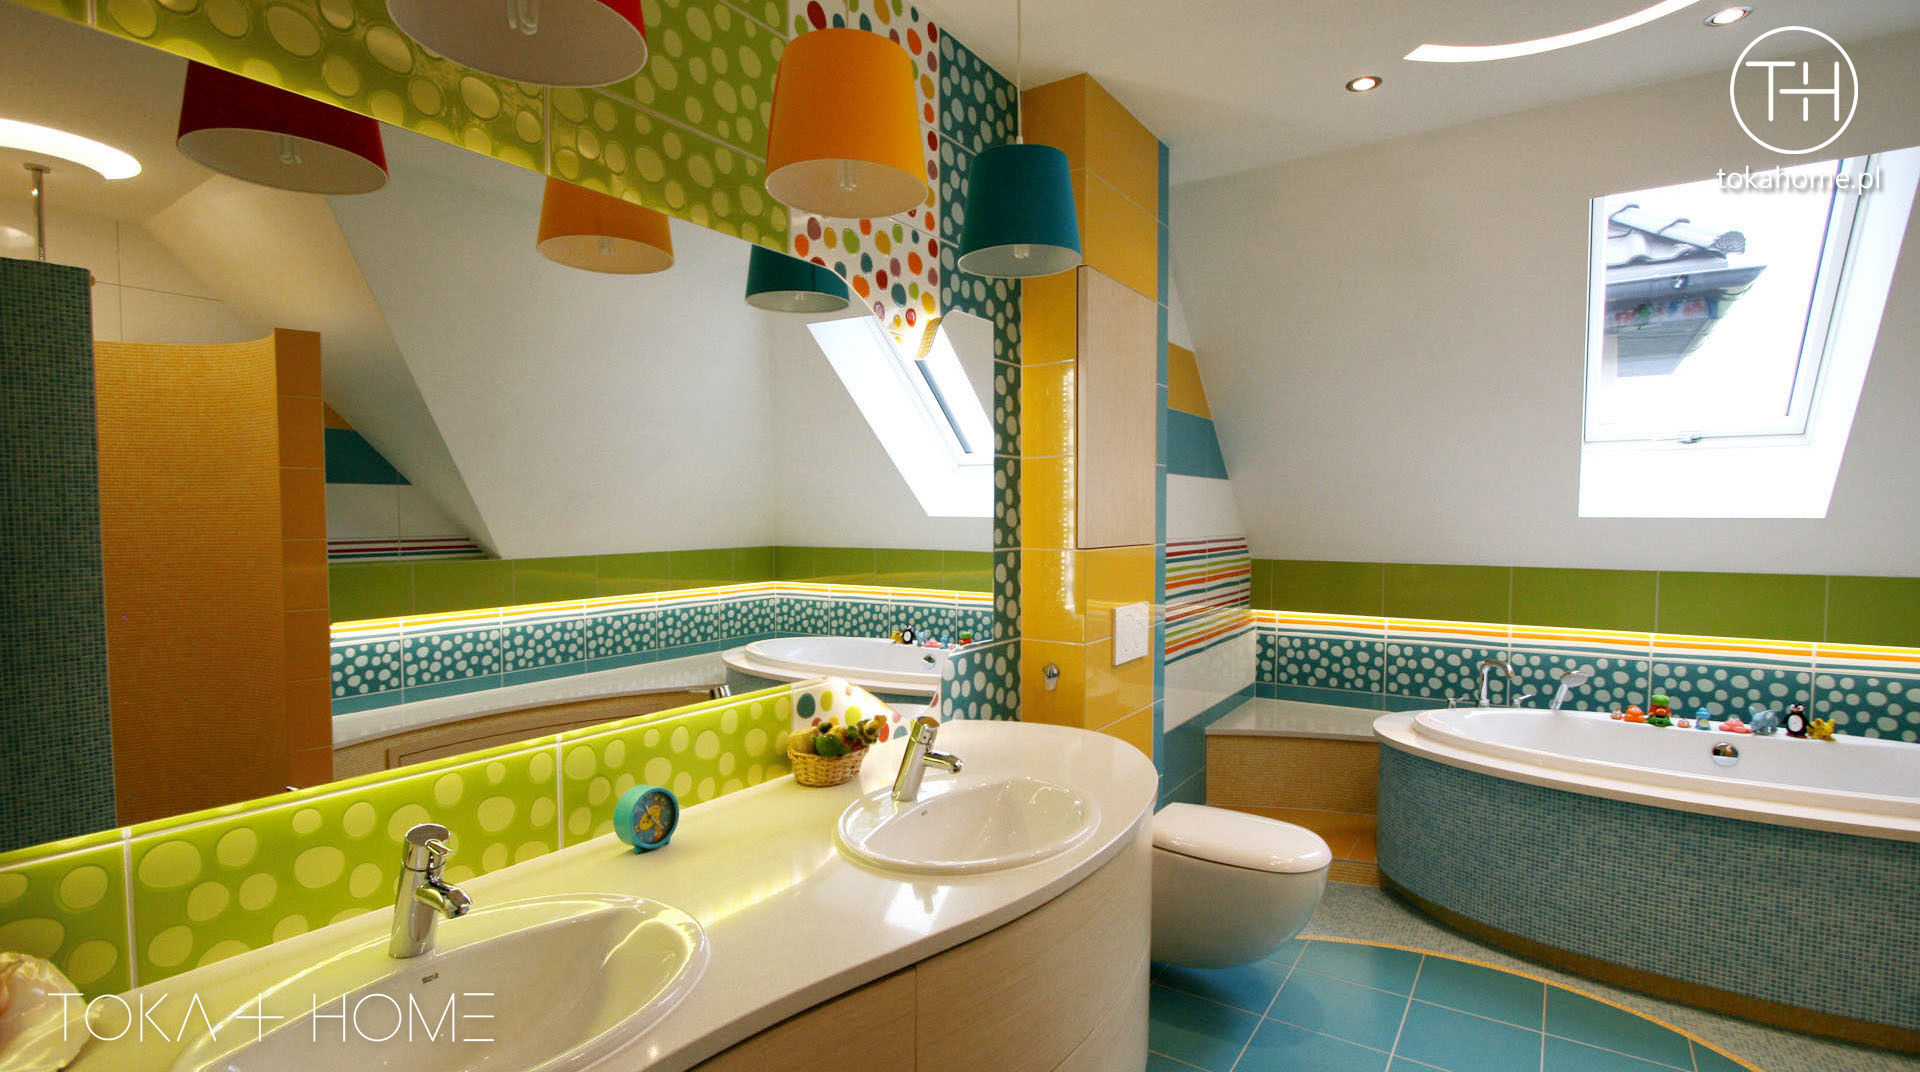 Zaczarowany świat - łazienka dla dzieci, TOKA + HOME TOKA + HOME Moderne Badezimmer Keramik